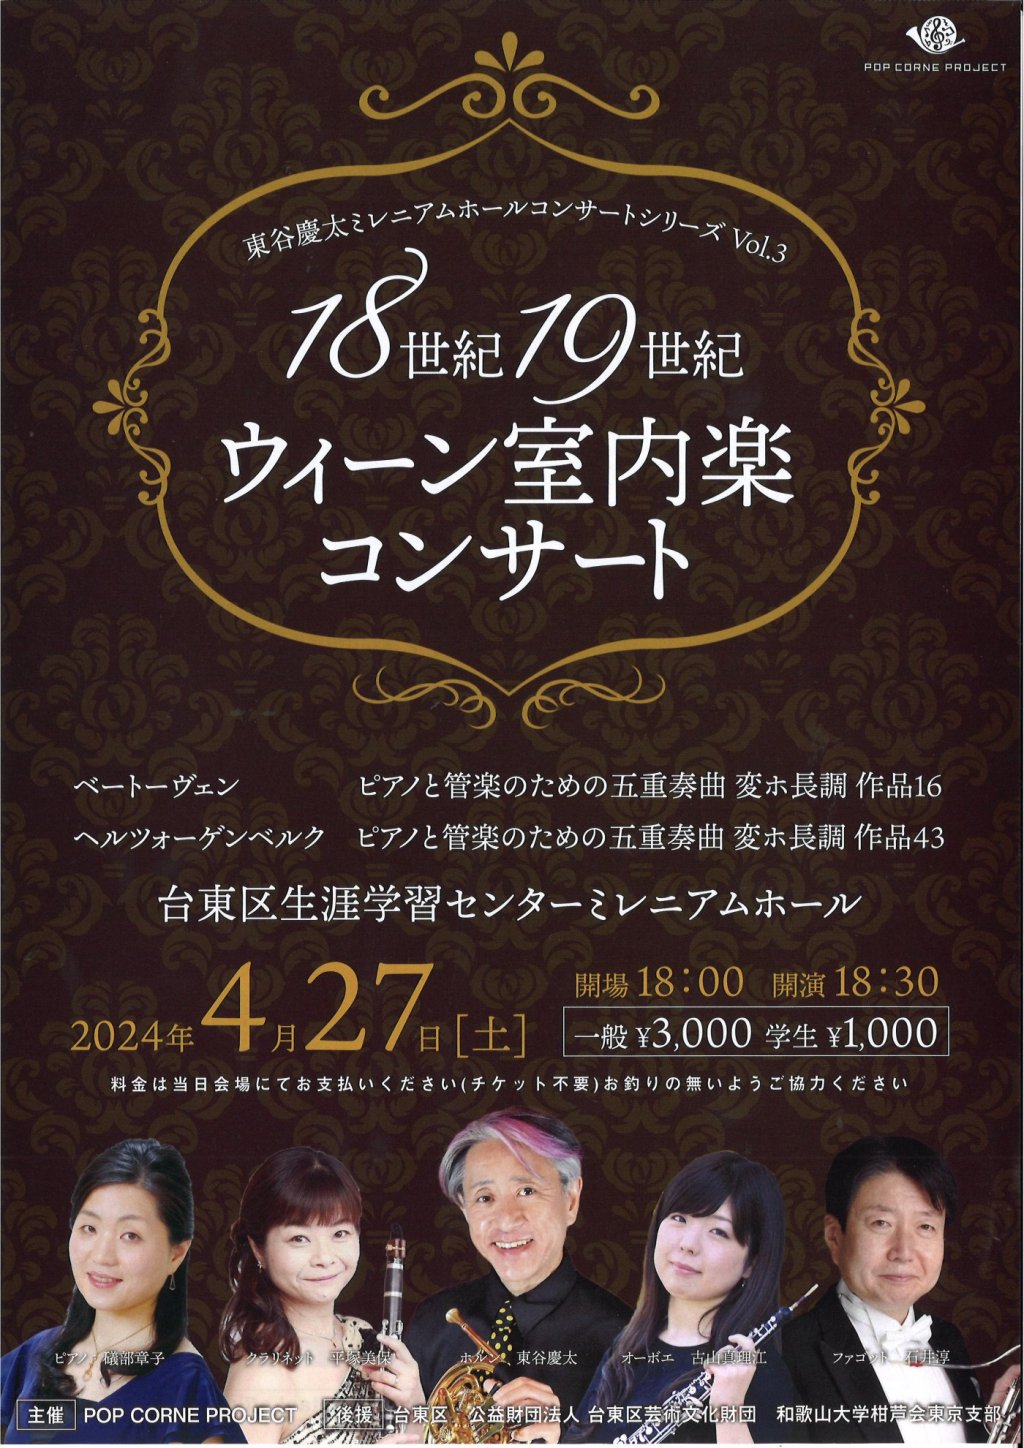 東谷慶太ミレニアムホールコンサートシリーズ Vol.3「18世紀 19世紀 ウィーン室内楽コンサート」